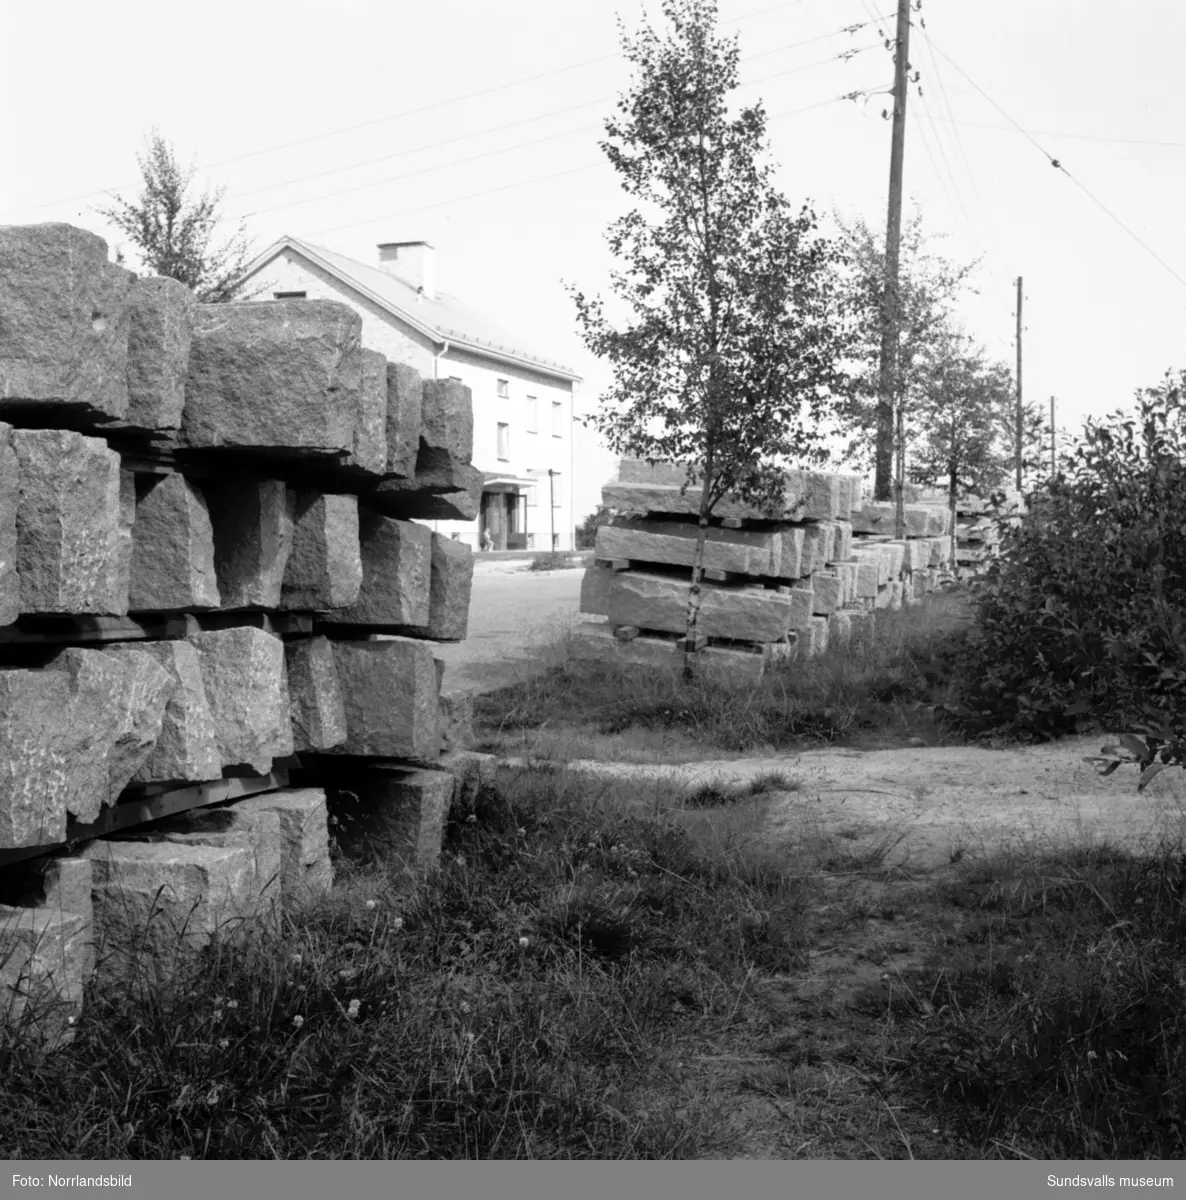 Upplag av kantsten på Södermalm. På den första bilden syns fastigheten på Södra Allén 8 mellan stentravarna